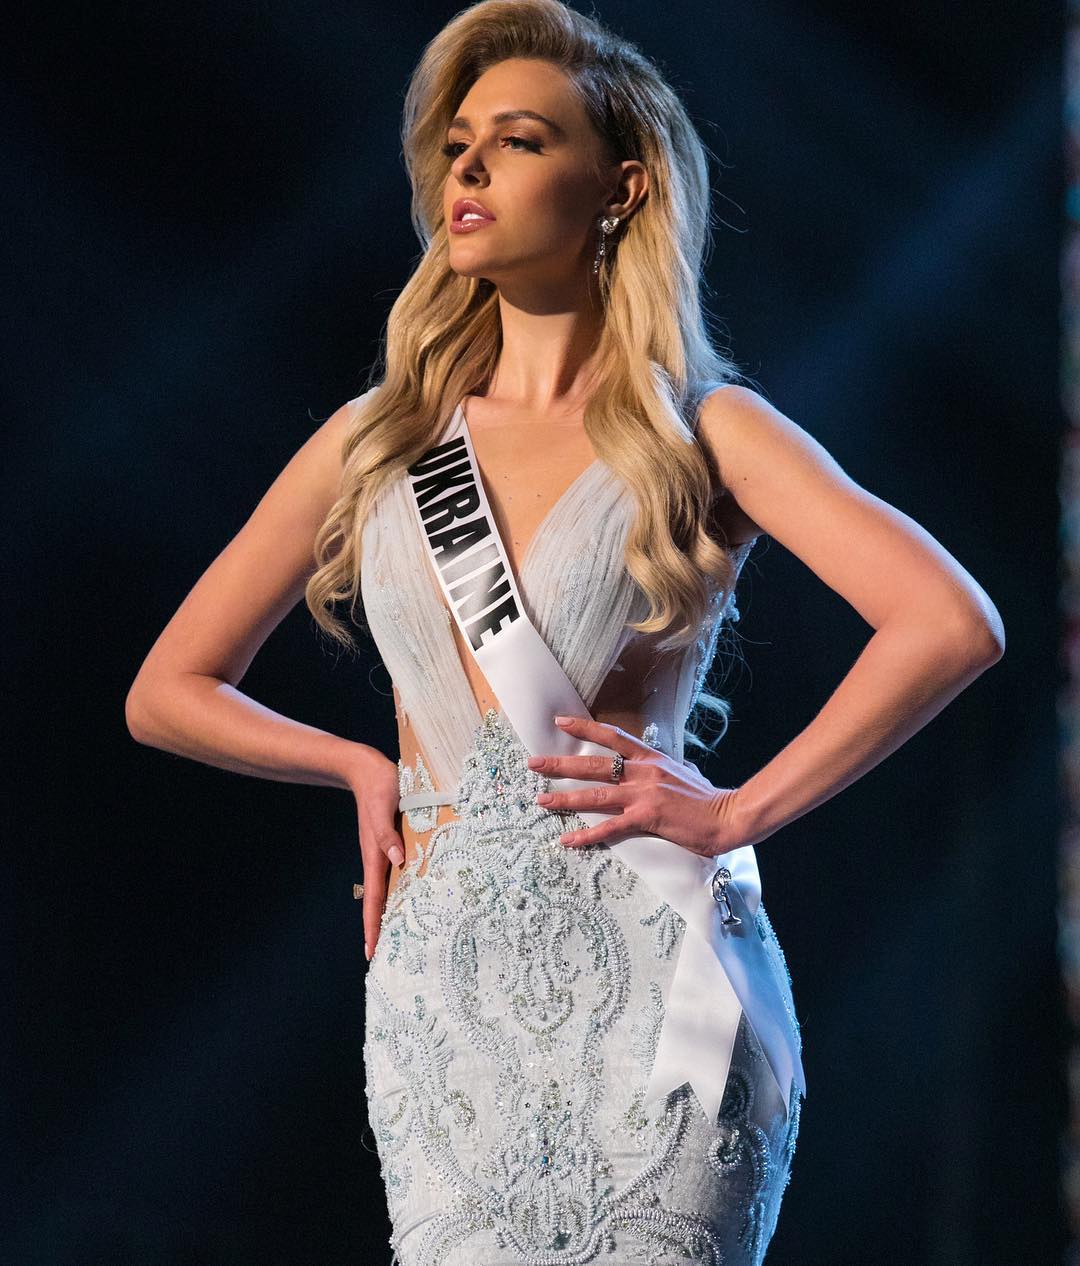 Мисс Вселенная 2018: фото победительницы — кто победил, биография, Инстаграм 